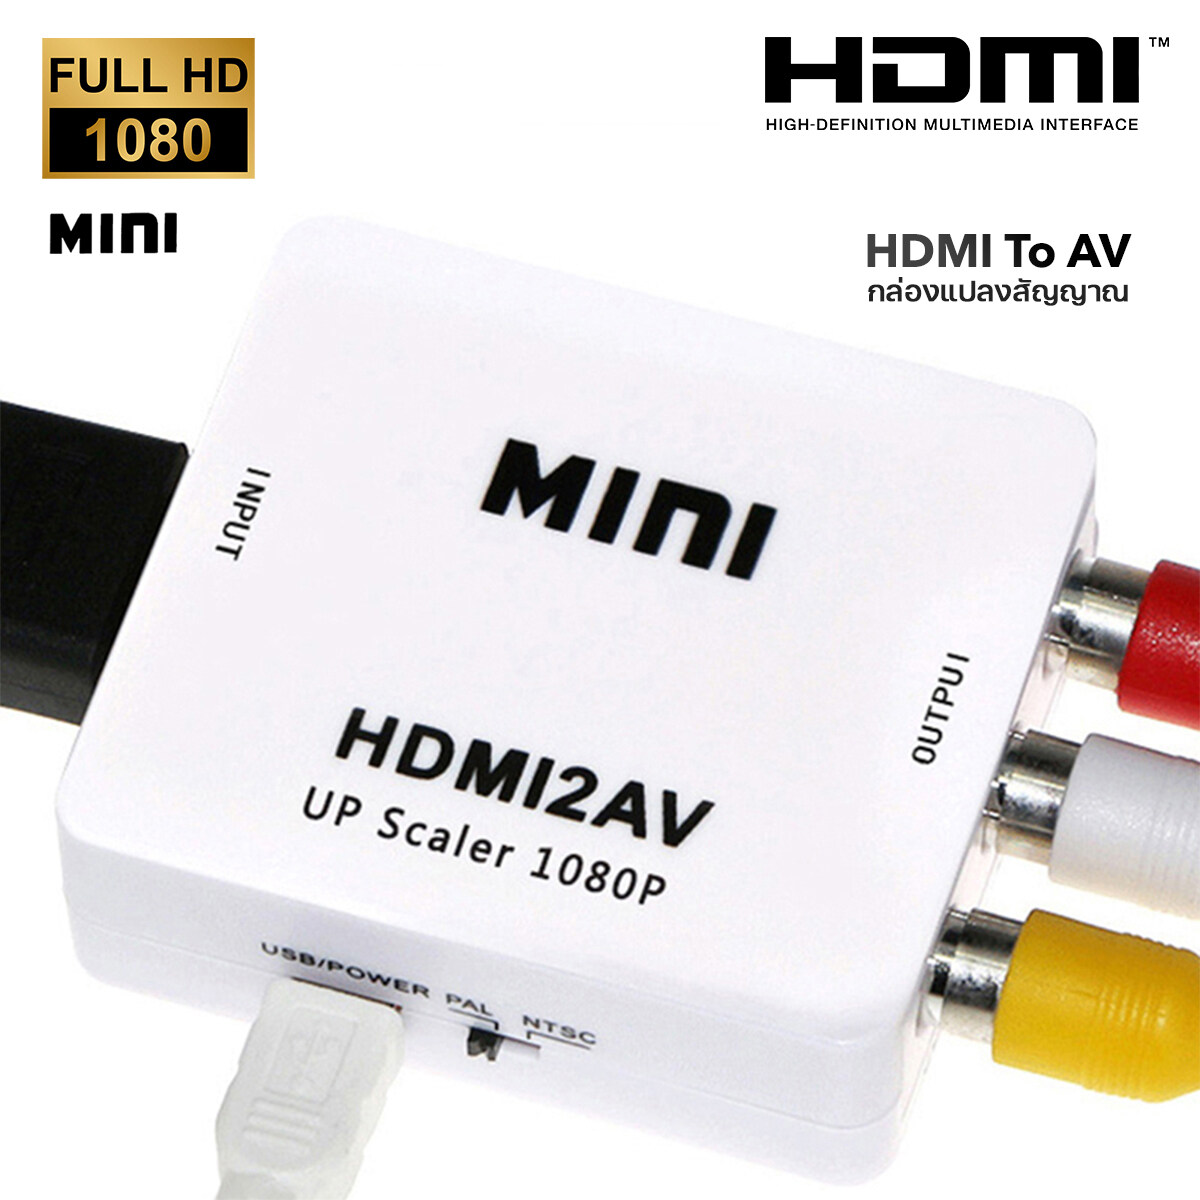 สายแปลง hdmi to av แปลงhdmiเป็นav hdmi2av กล่องแปลง hdmi to av ตัวแปลงสัญญาณ ตัวแปลงสัญญาณ hdmi to AV กล่องแปลง hdmi to av หัวแปลงhdmi HDMI TO AV Converter 1080P#T4